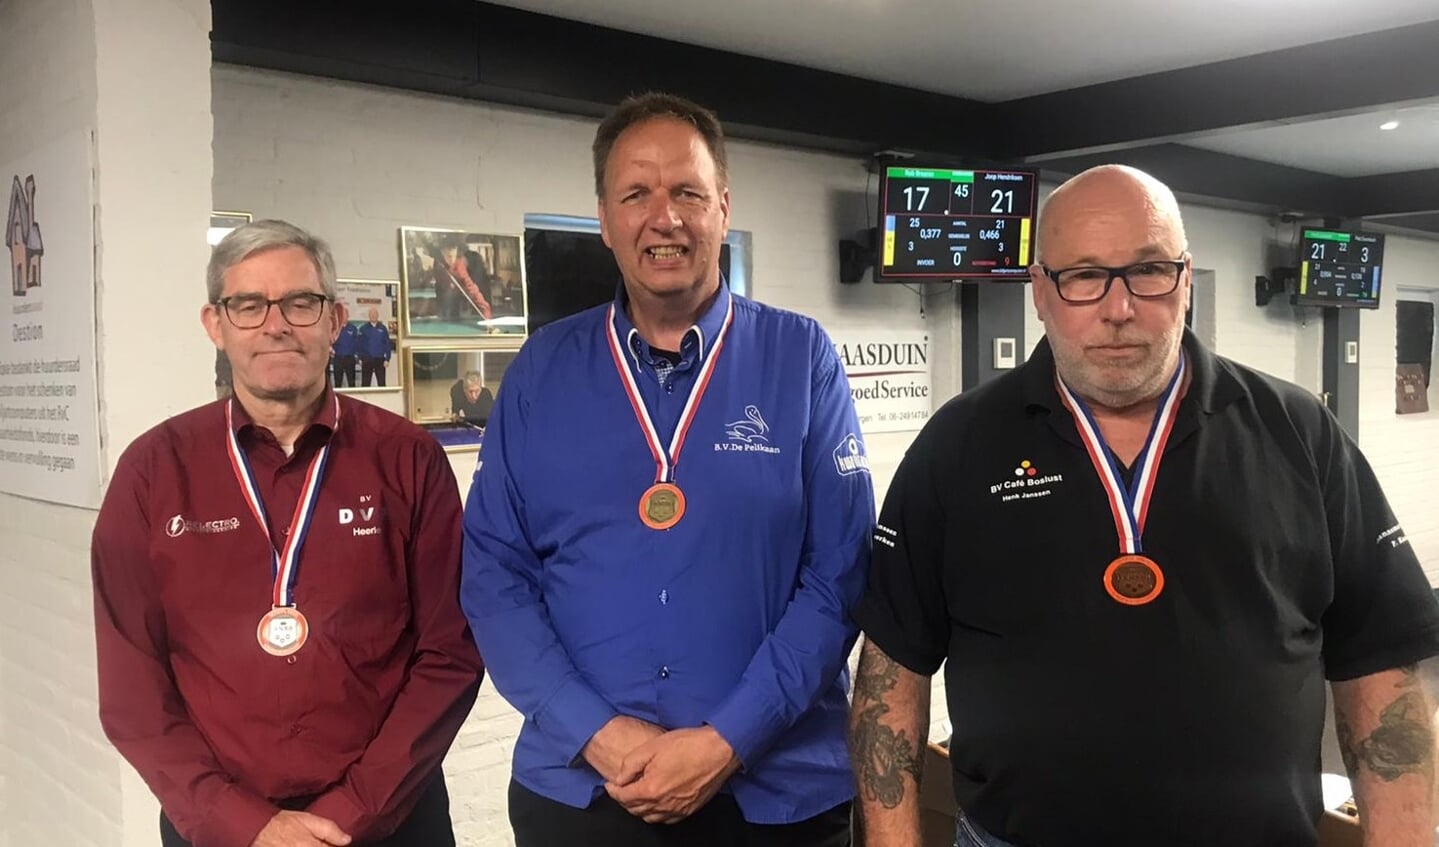 Goud voor Joop Hendriksen, Piet de Nijs zilver en Henk Janssen brons